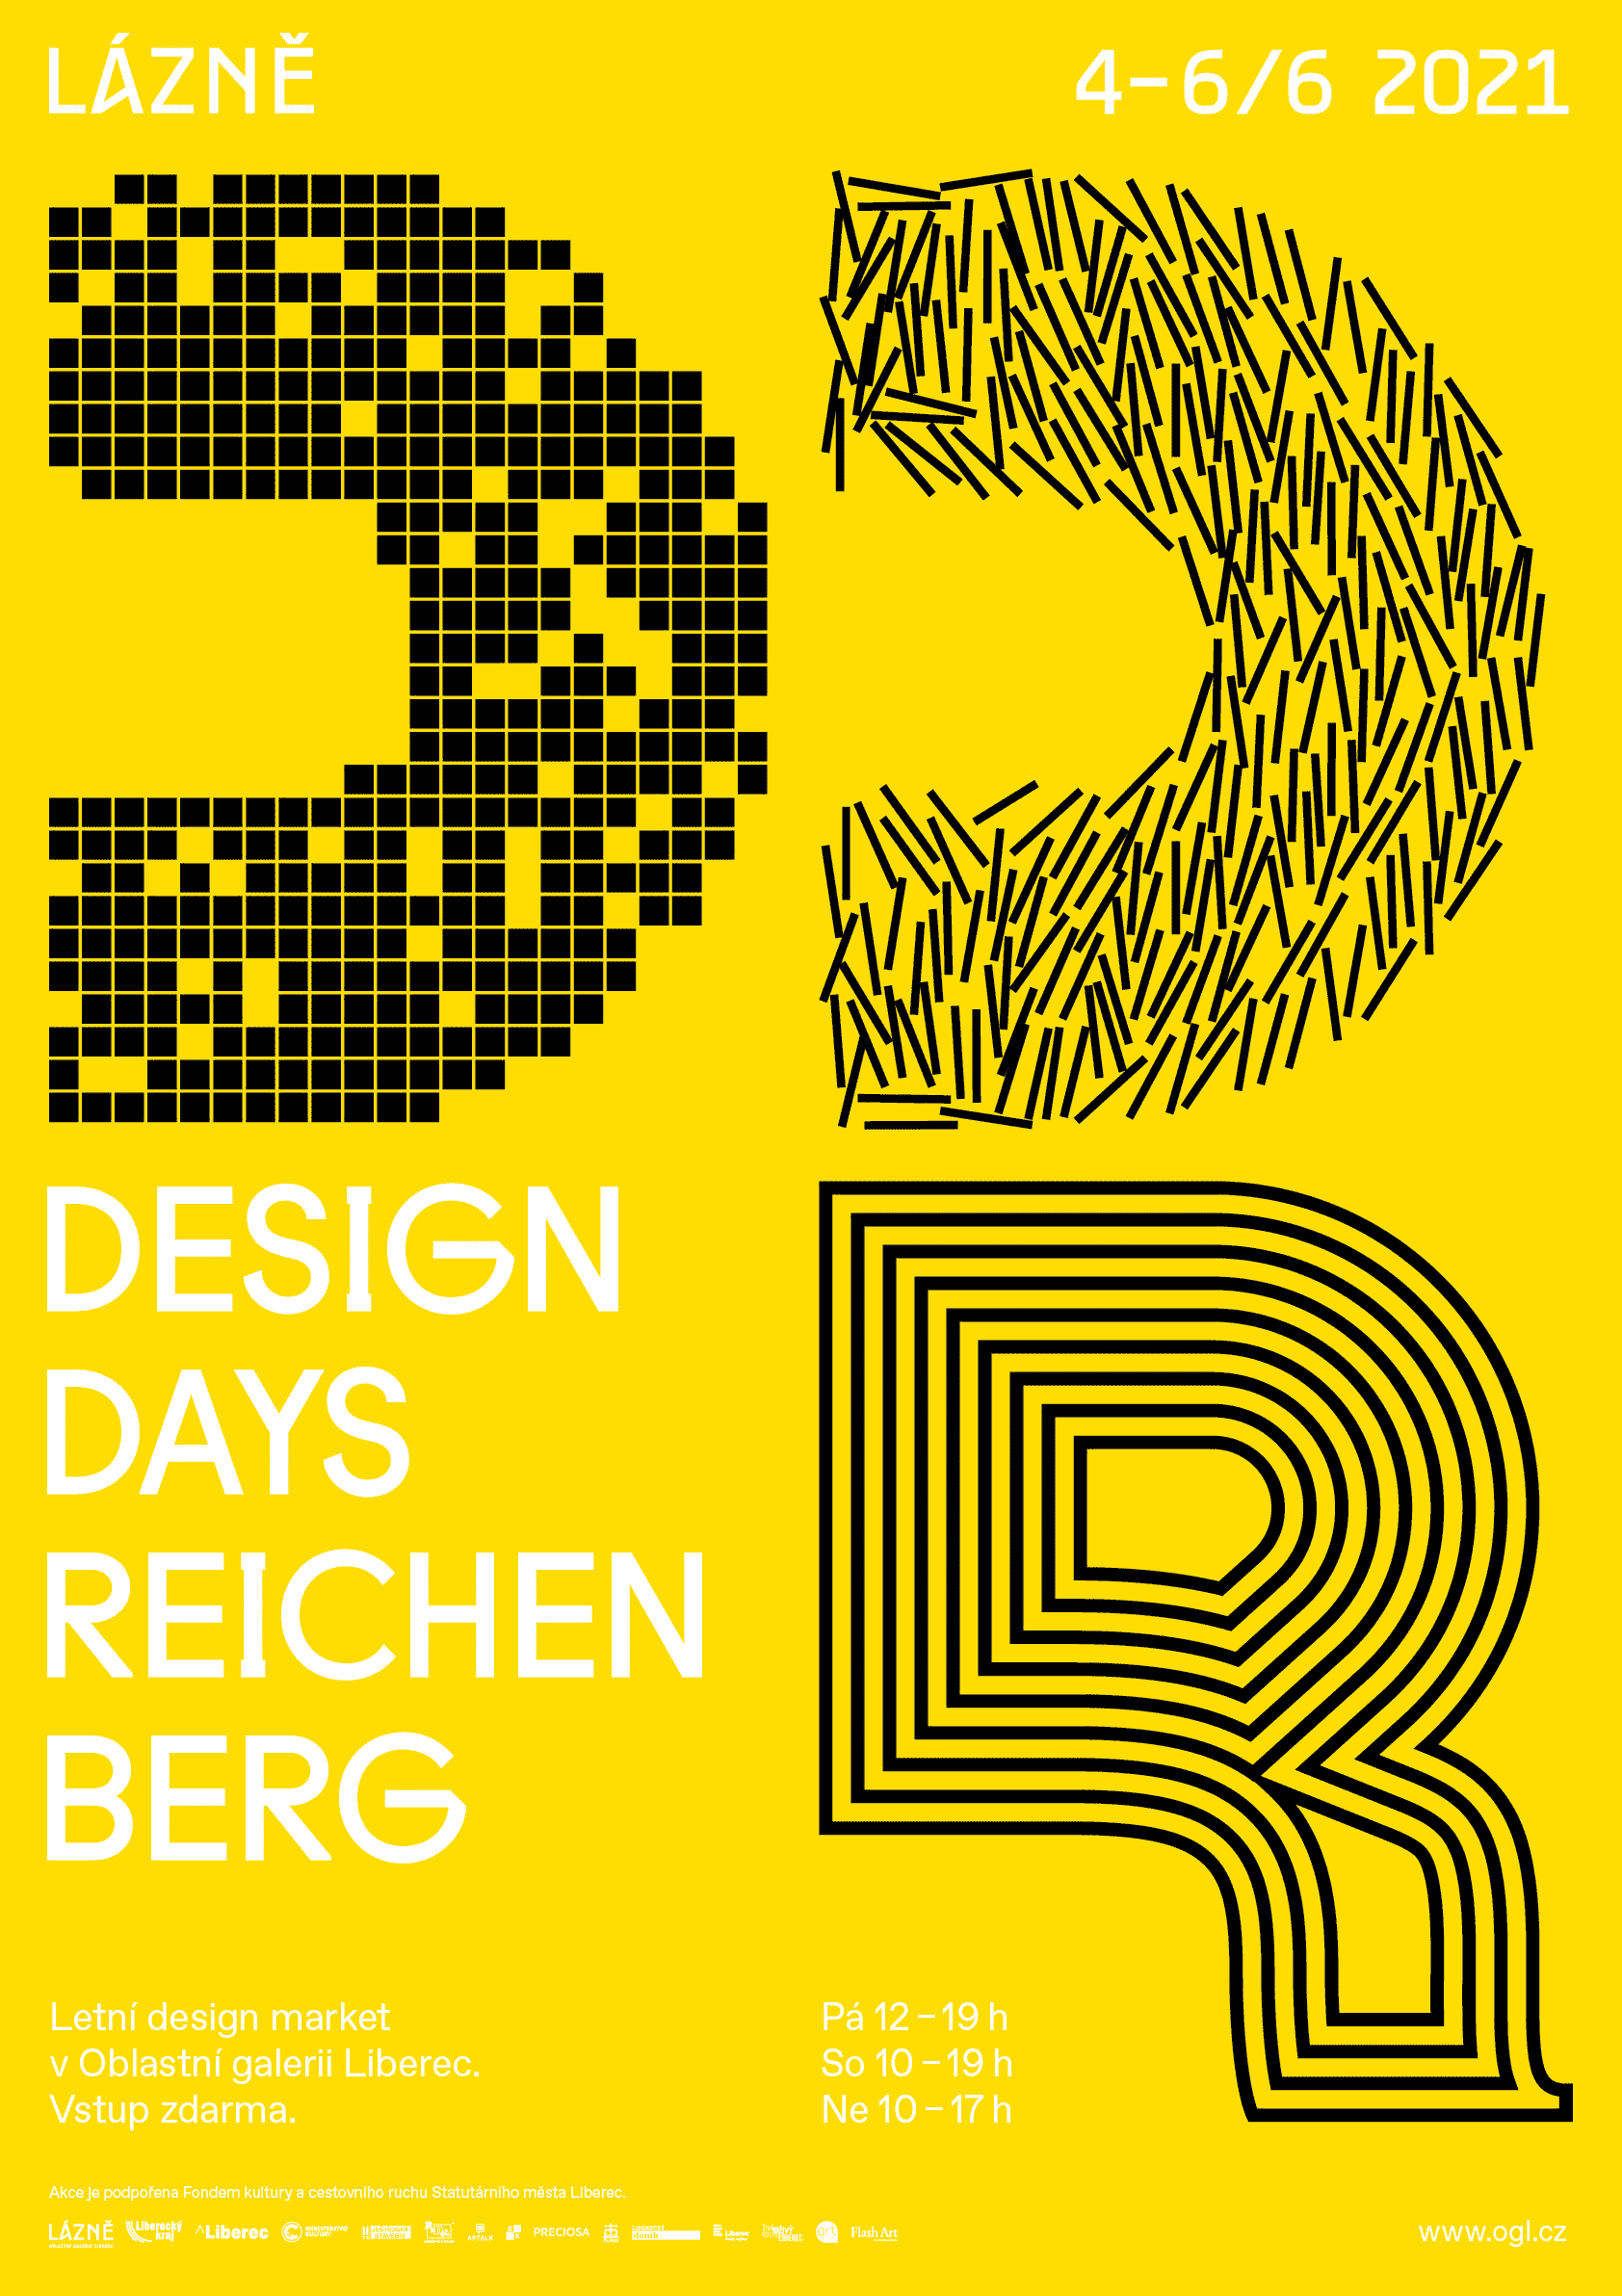 Design Days Reichenberg 2021